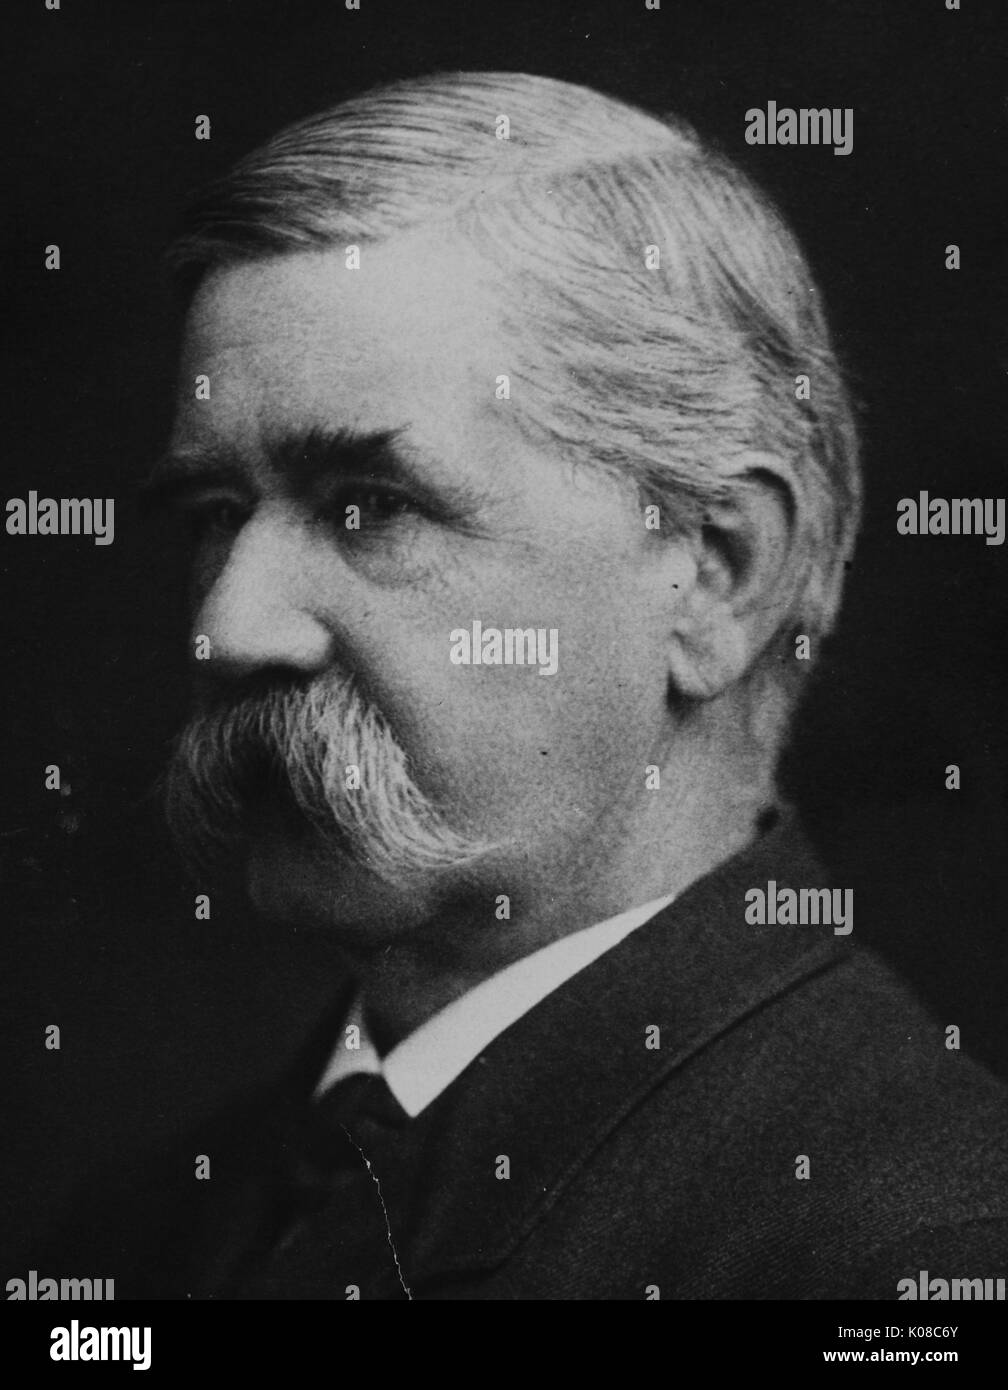 Porträt von William Keith Brooks, er war ein US-amerikanischer Zoologe und war als Professor für Biologie an der Johns Hopkins University von 1891-1908 beschäftigt, er lebte von 1848-1908, Usa, 1880. Stockfoto